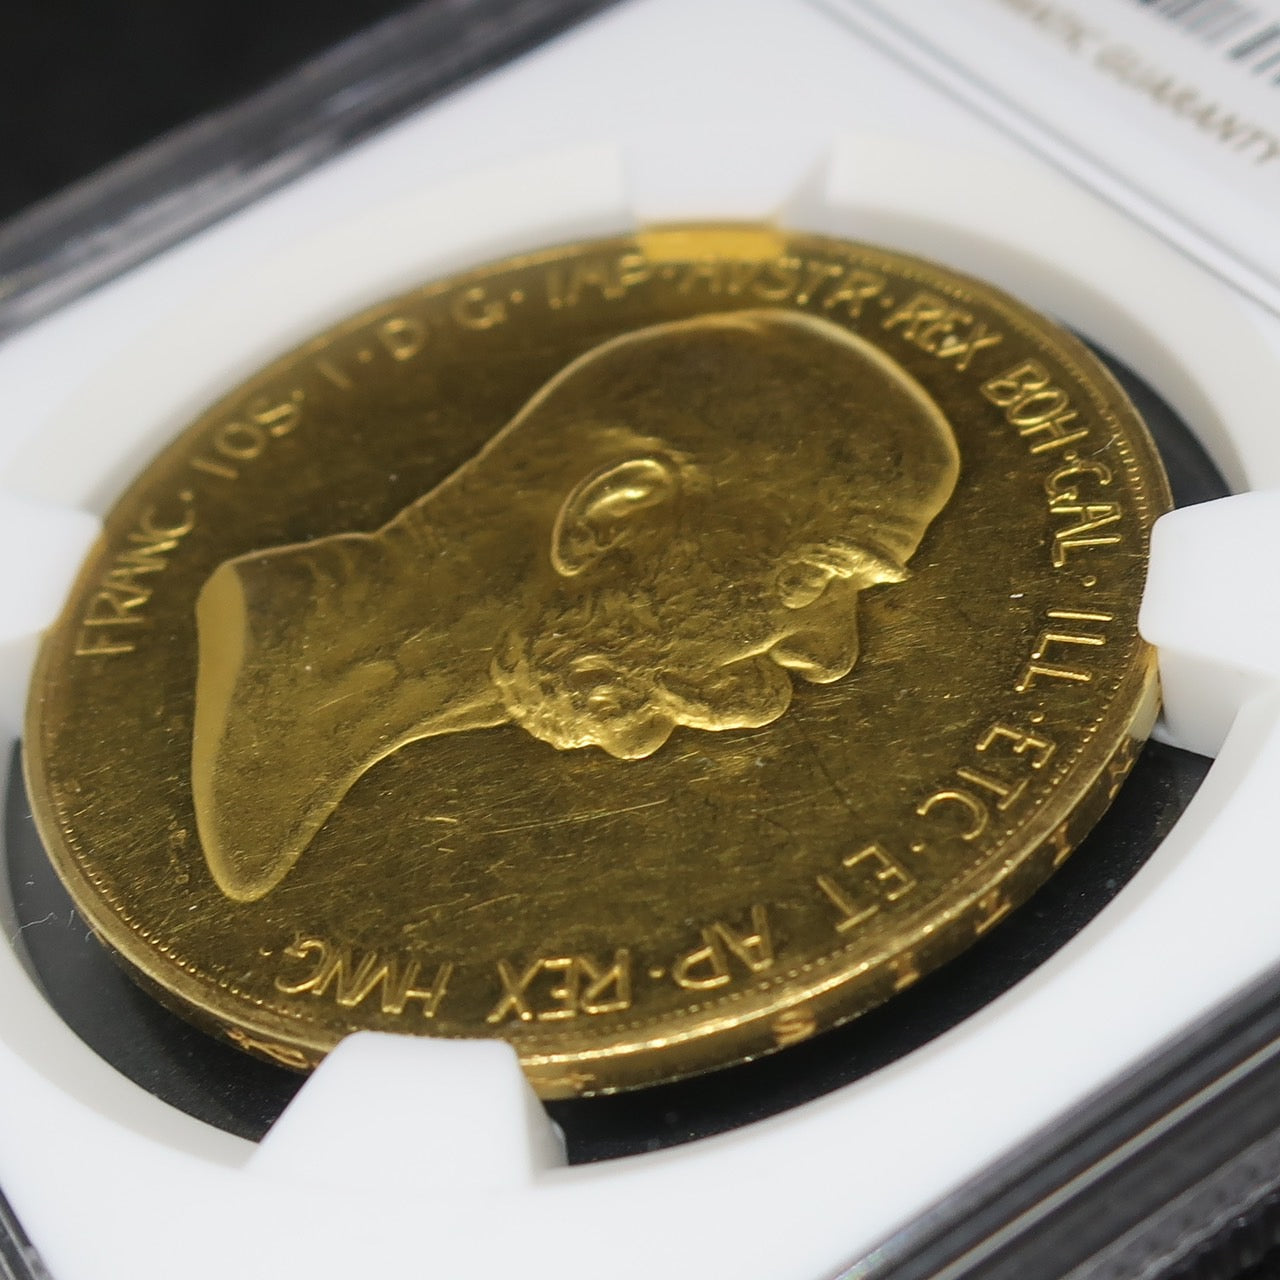 1908 オーストリア 100コロナ金貨 雲上の女神 フランツ・ヨーゼフ1世 60周年記念金貨 PF60 NGC - CoinBlessing(コインブレッシング)